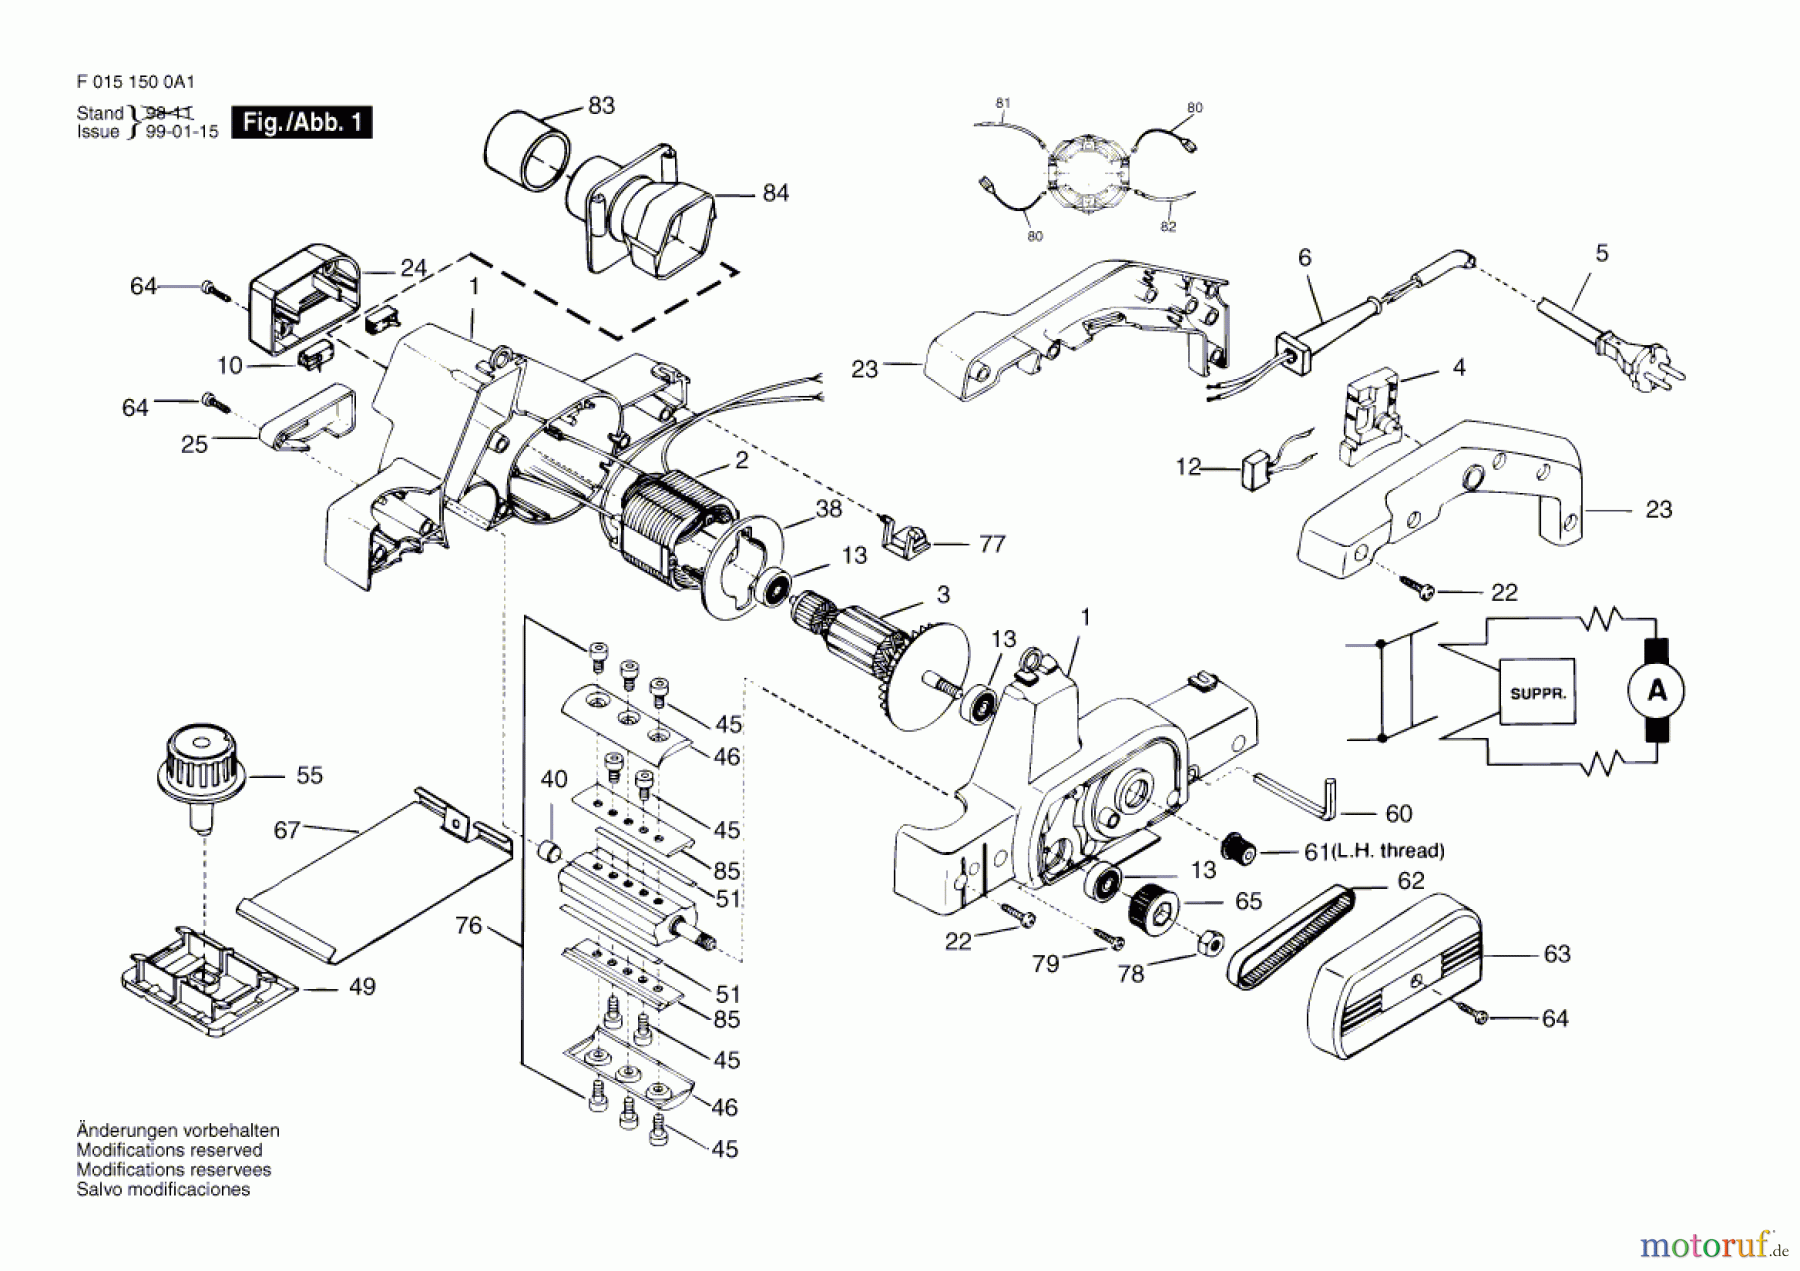  Bosch Werkzeug Handhobel 1500H1 Seite 1